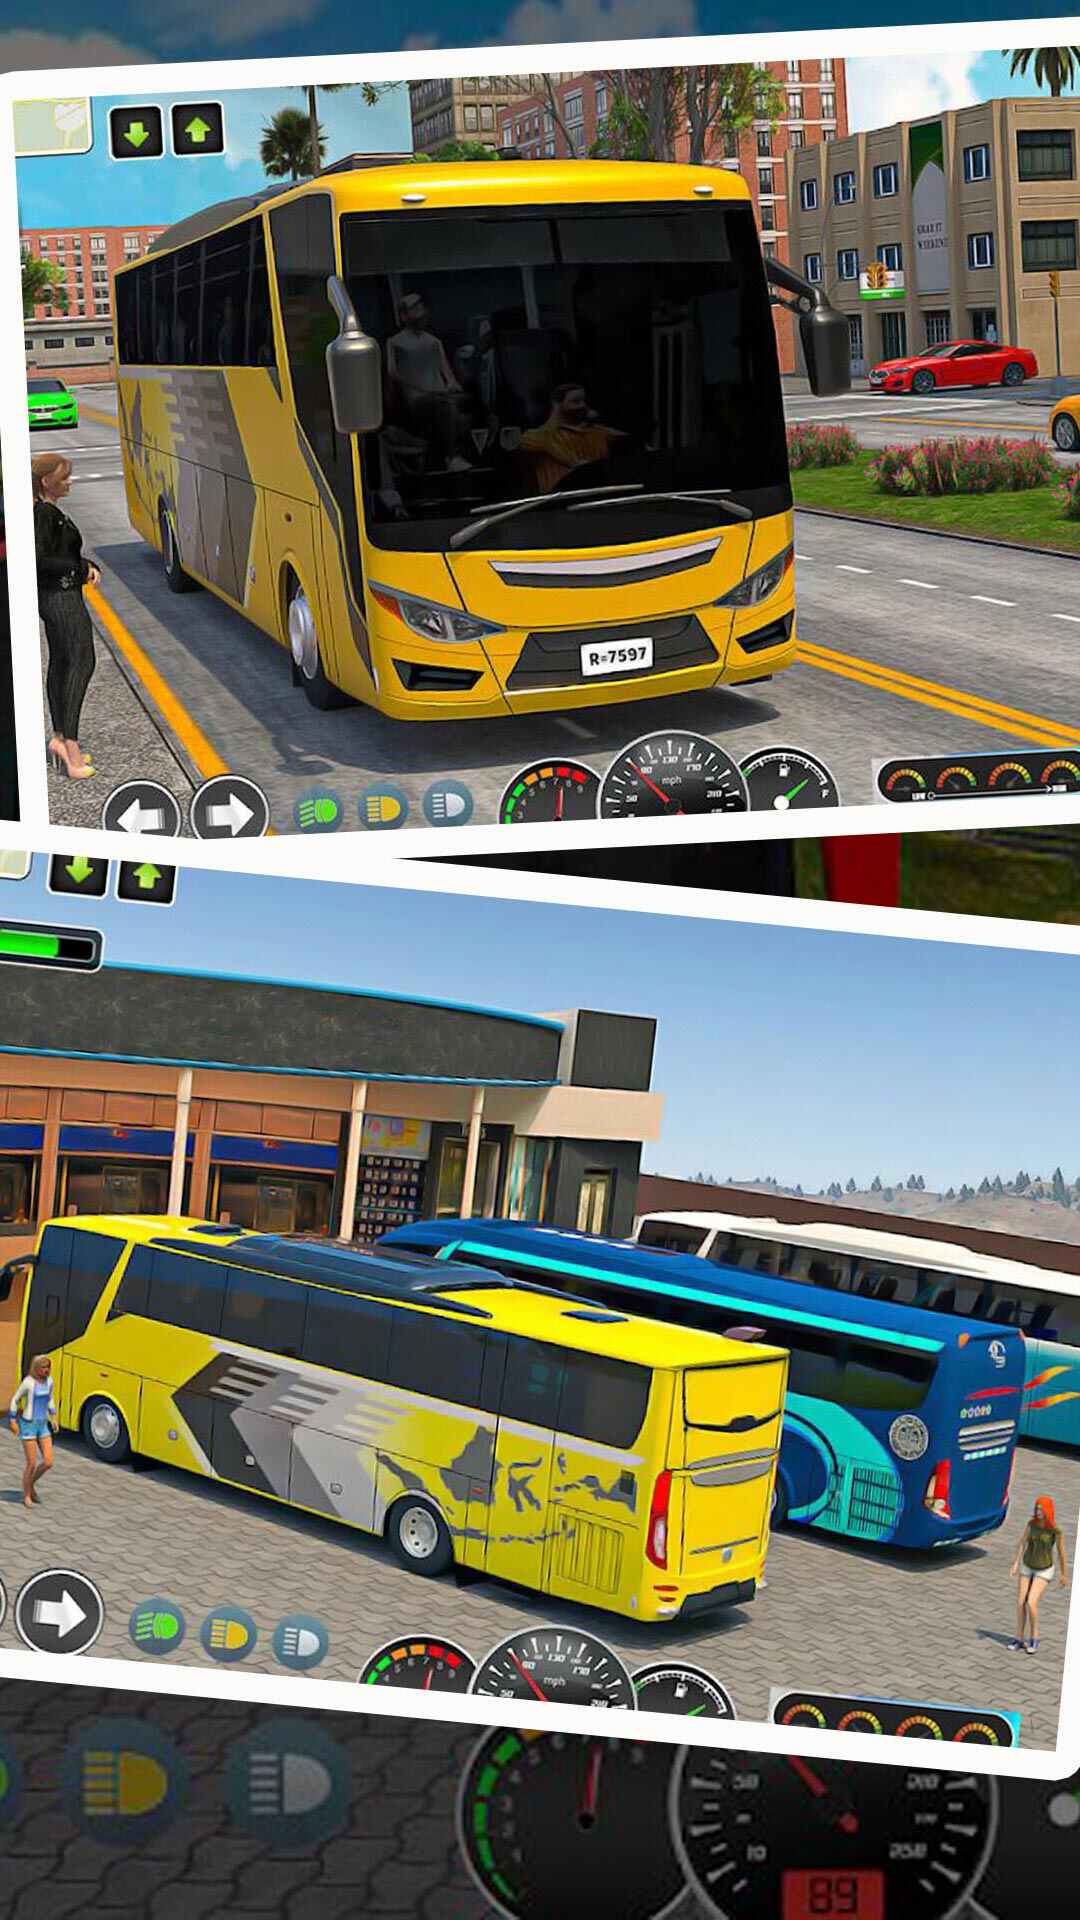 模拟3D客车游戏